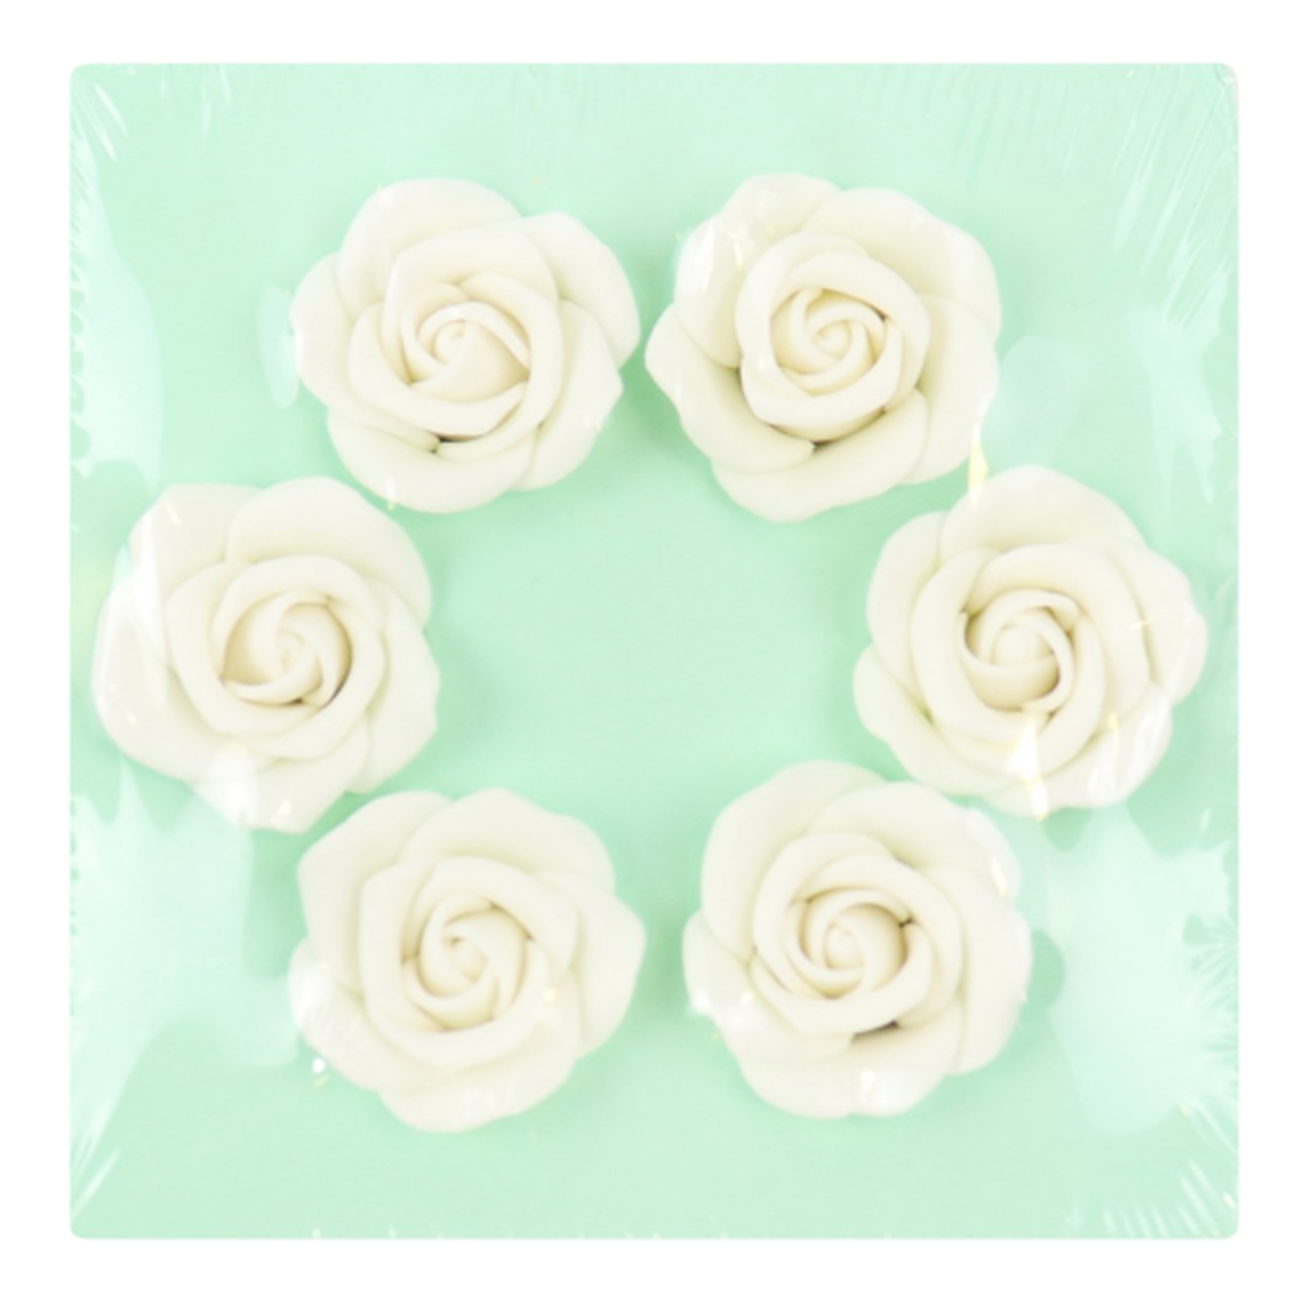 pme-white-sugar-roses-set6-45mm - PME White Sugar Roses Set of 6 